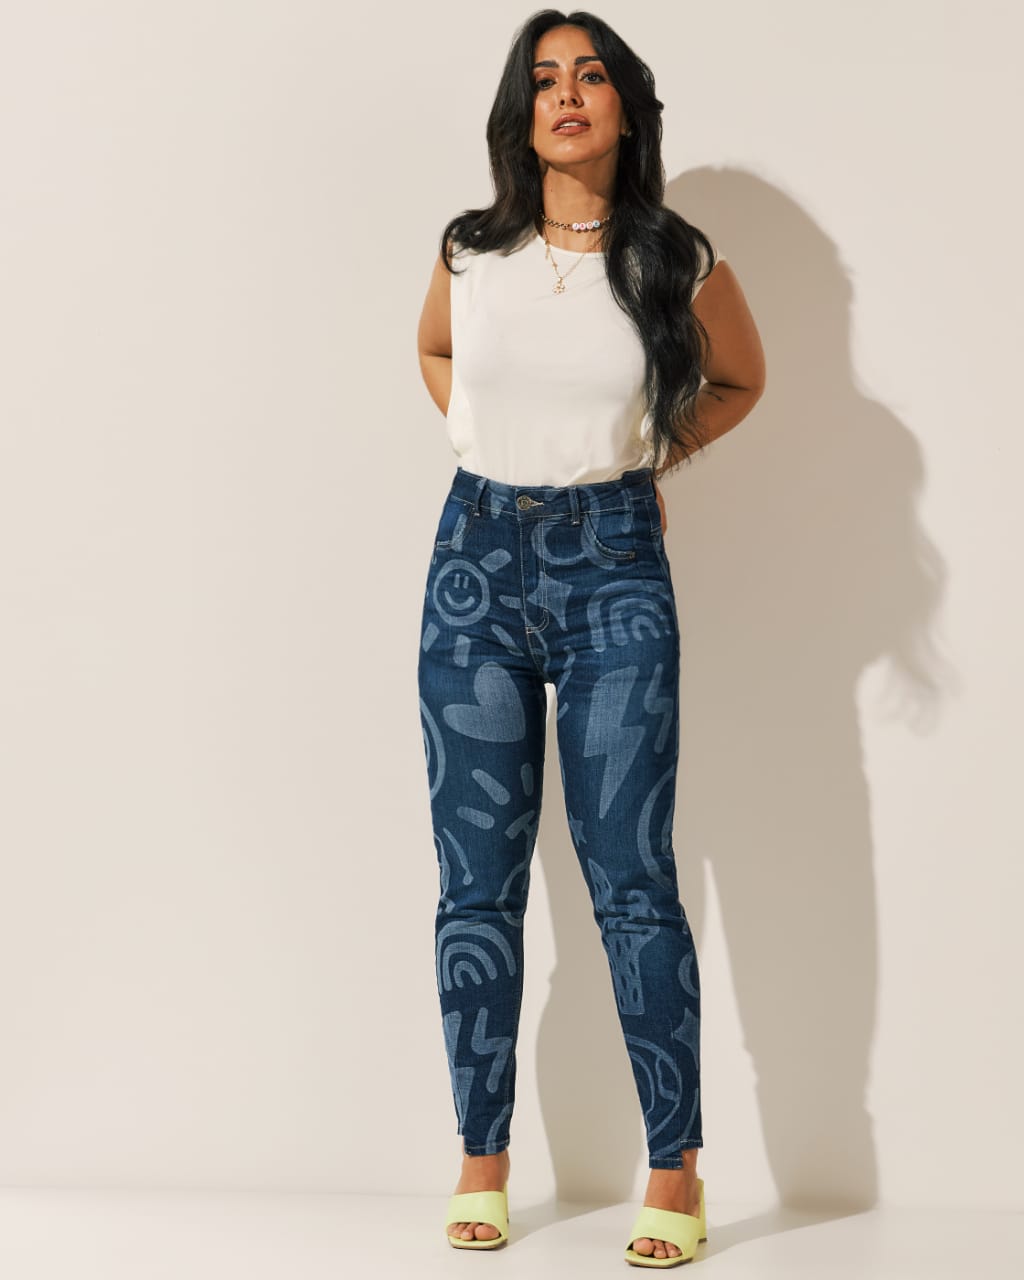 Jade Seba cria jeans especial para Malwee e Lycra